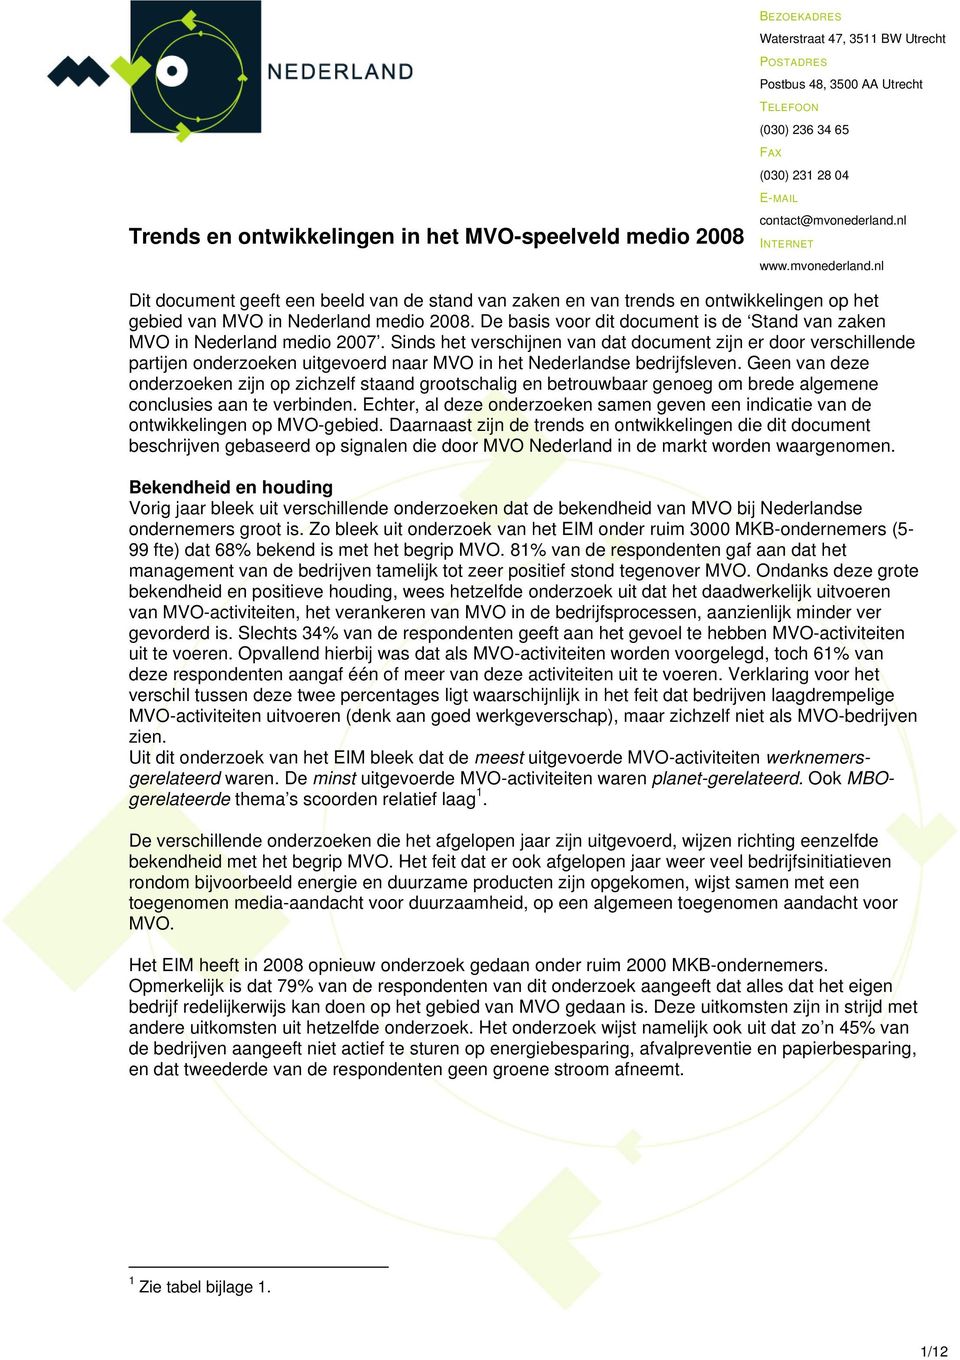 De basis voor dit document is de Stand van zaken MVO in Nederland medio 2007.